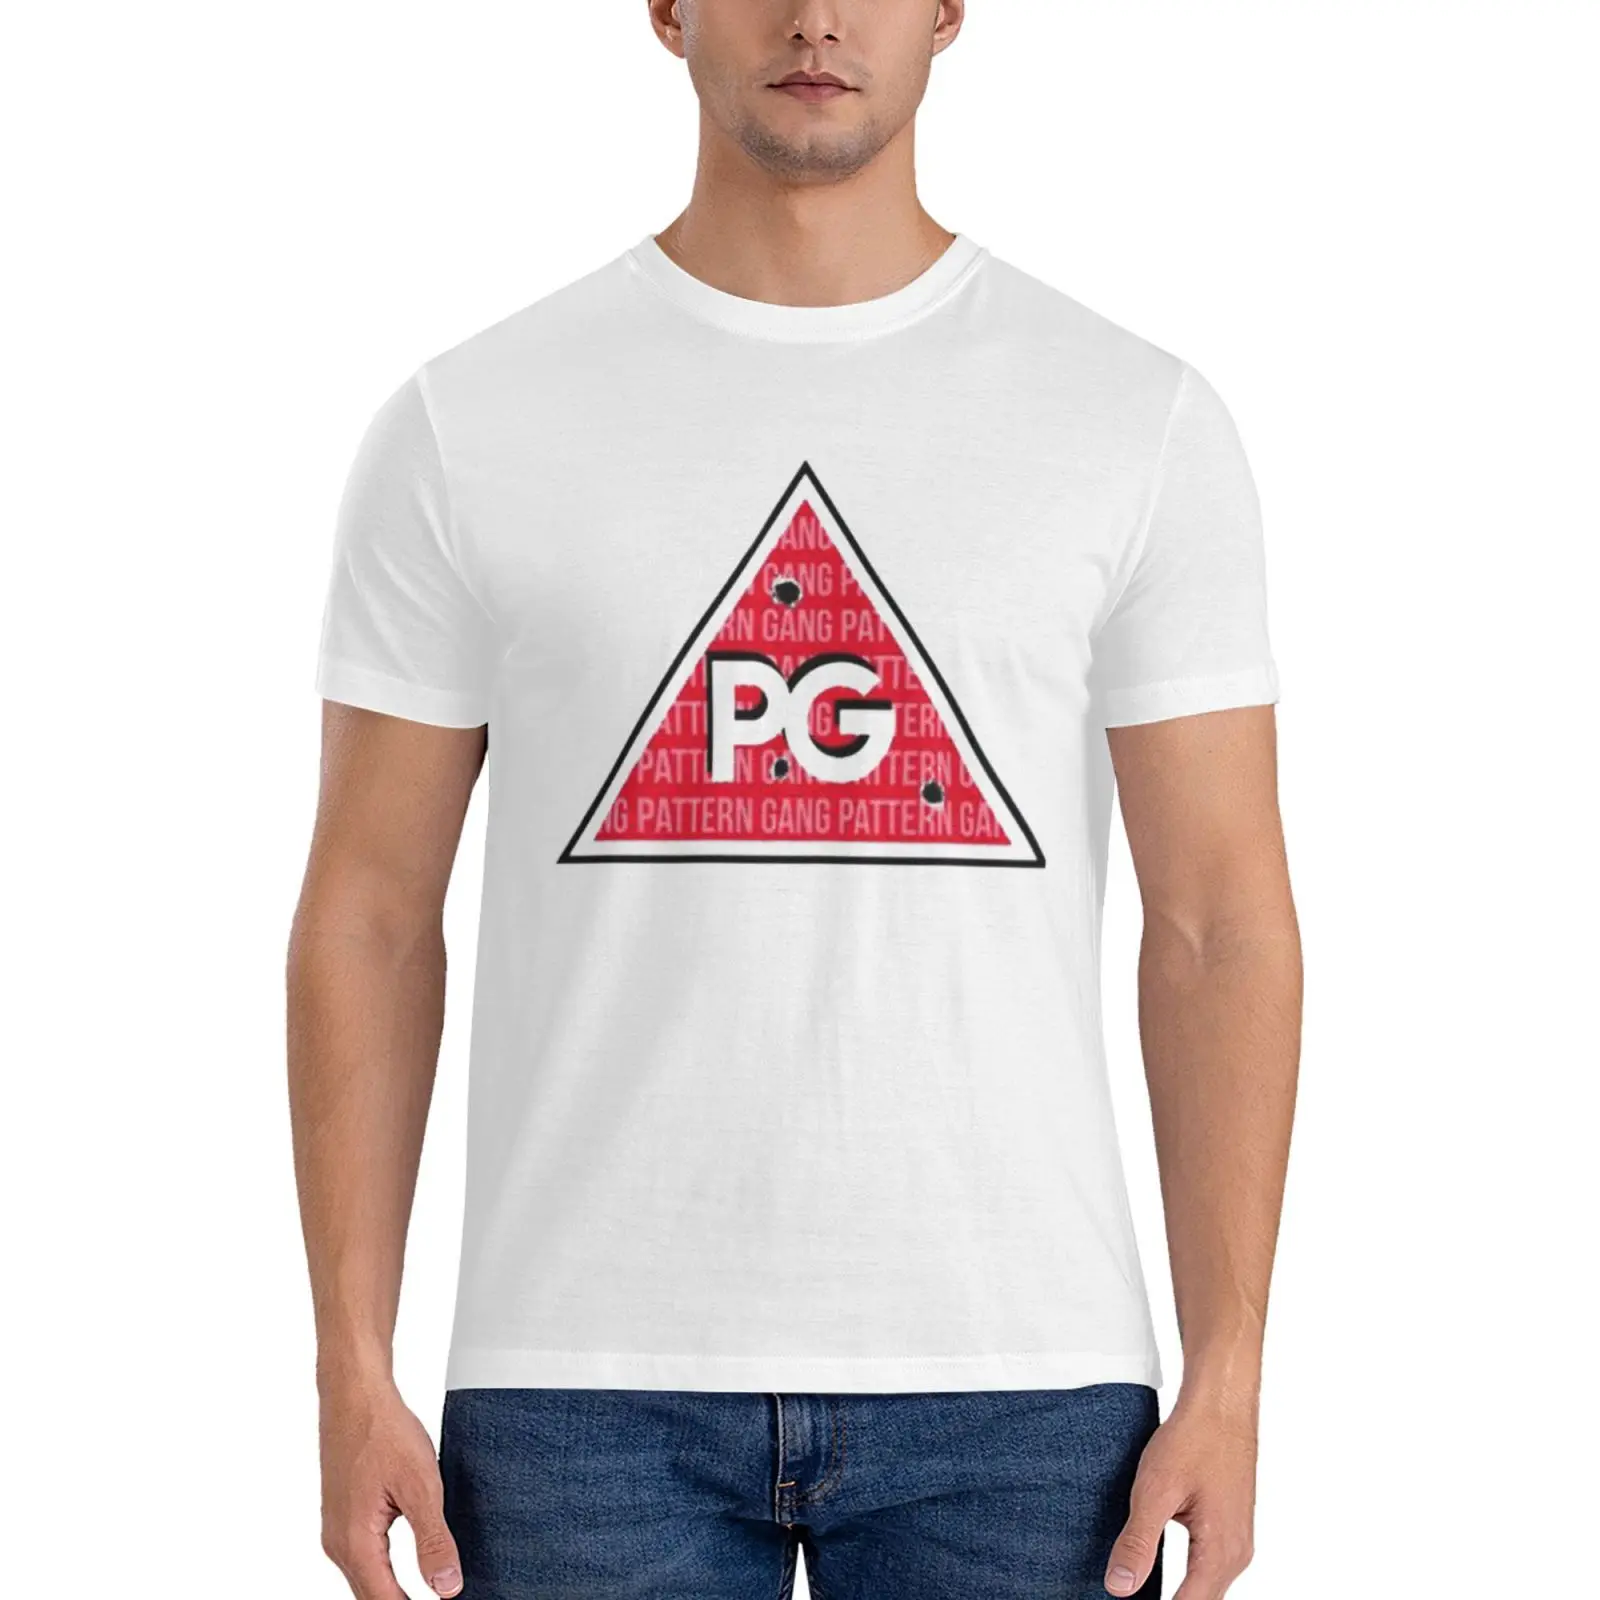 Fredo Desen Gang Temel T-Shirt büyük ve uzun boylu t shirt erkekler için düz t shirt erkekler erkekler t shirt